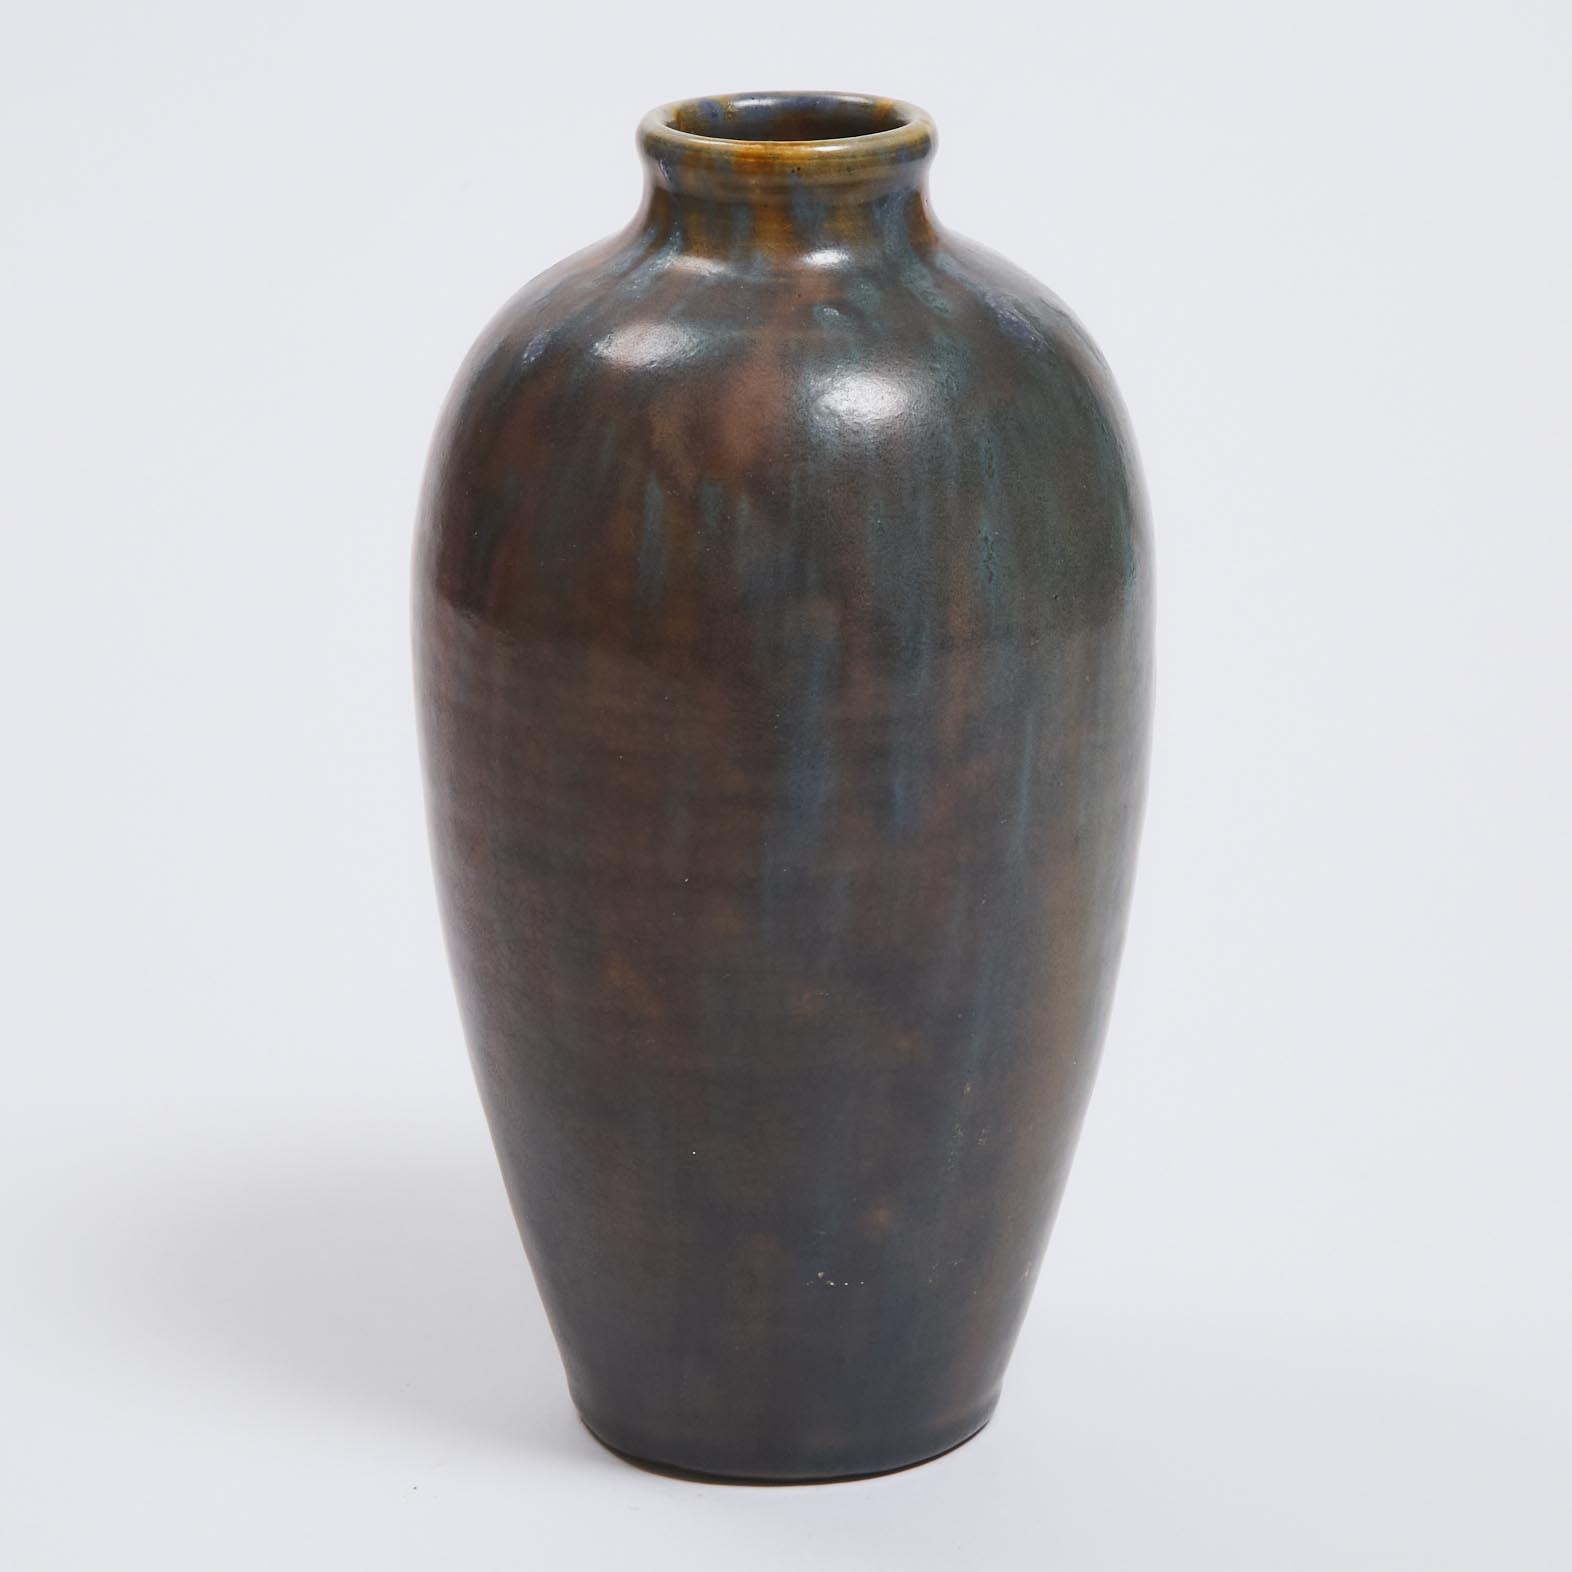 George J. Cox (British, 1884-1946), Mottled Blue and Brown Glazed Vase, Mortlake Pottery, 1913